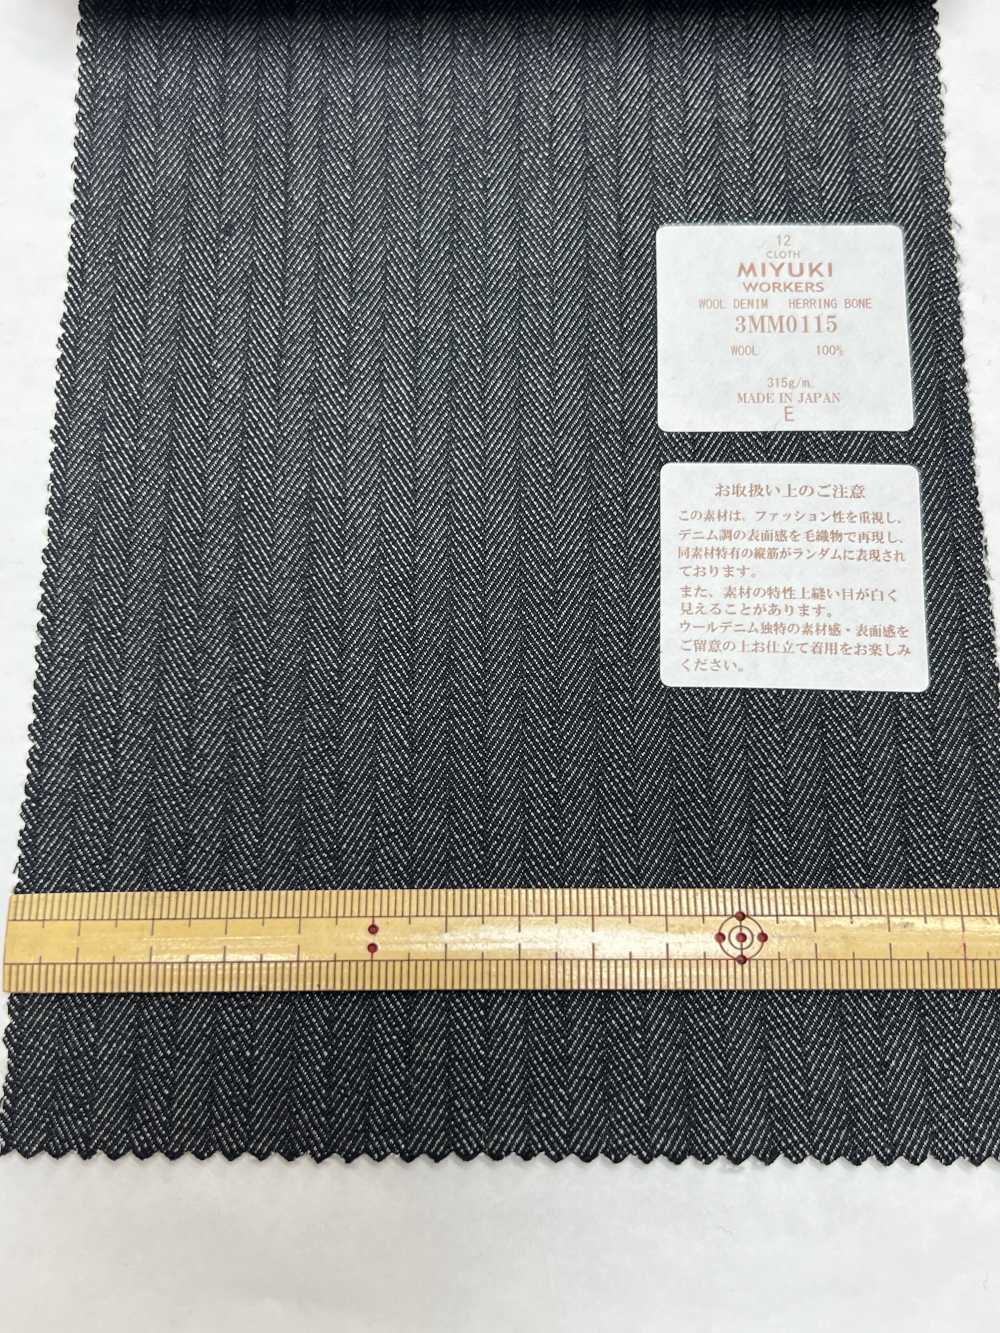 3MM0115 Creative Workers Wool Denim Herringbone Navy Blue[Textile] Miyuki Keori (Miyuki)